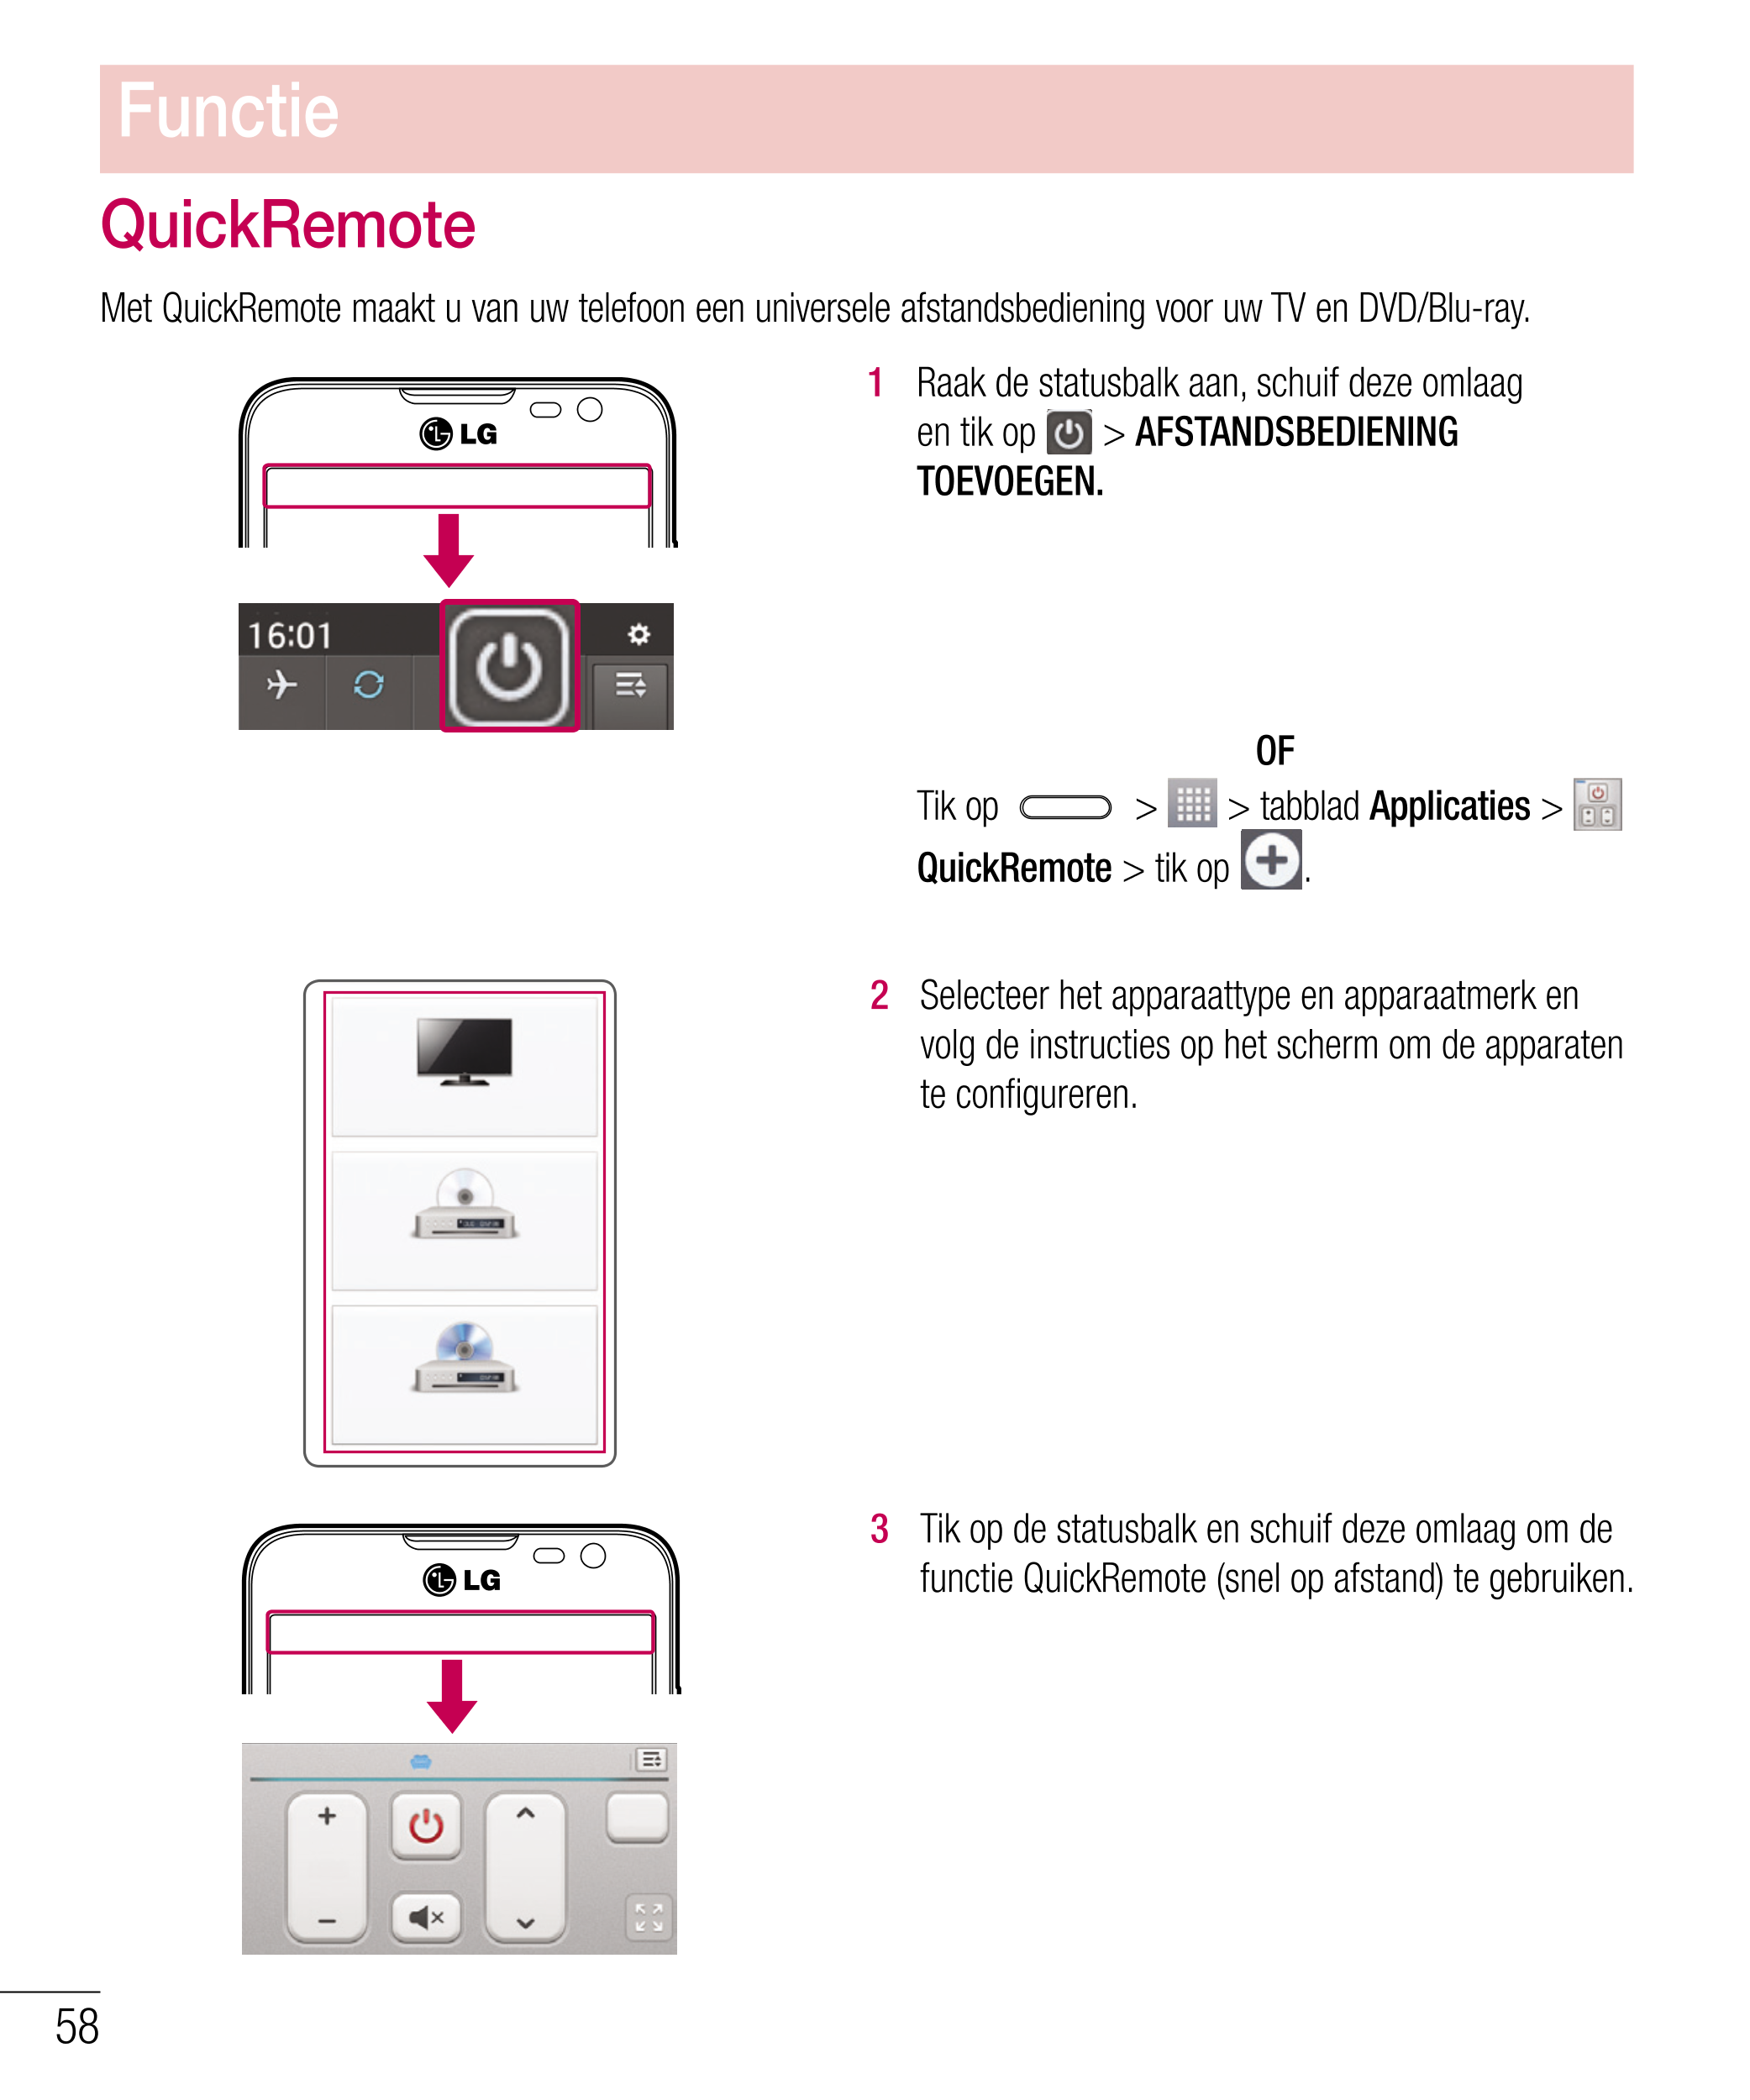 Functie
QuickRemote
Met QuickRemote maakt u van uw telefoon een universele afstandsbediening voor uw TV en DVD/Blu-ray.
1   Raak